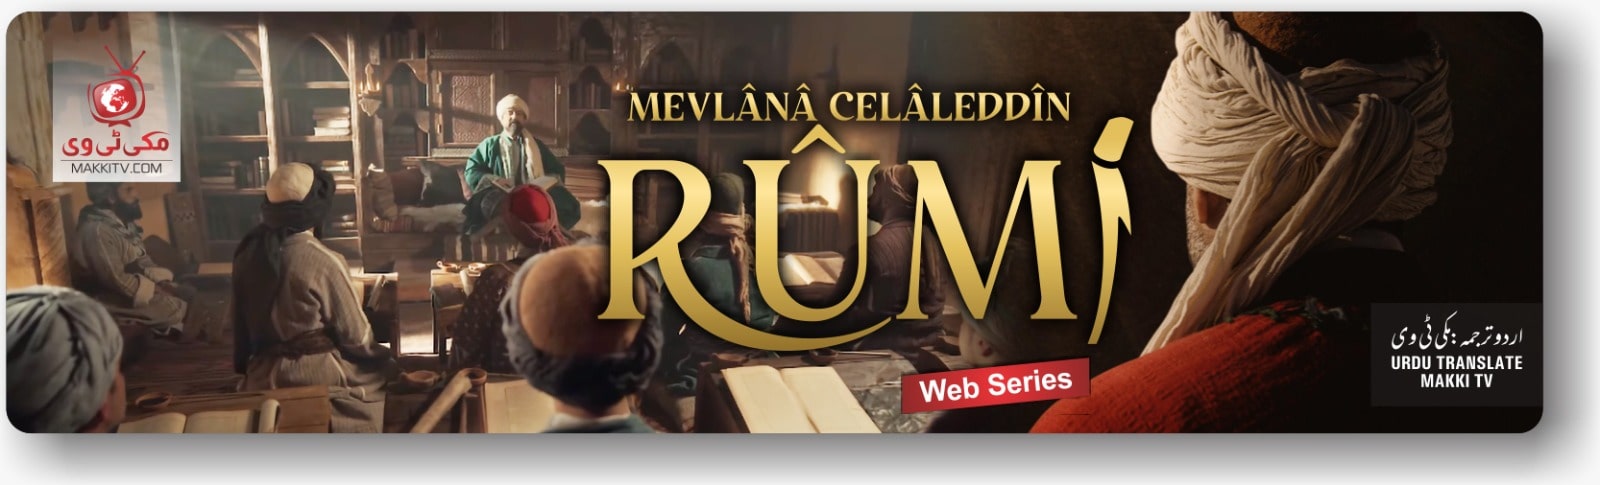 Mevlana Celaleddin Rumi In Urdu Subtitles